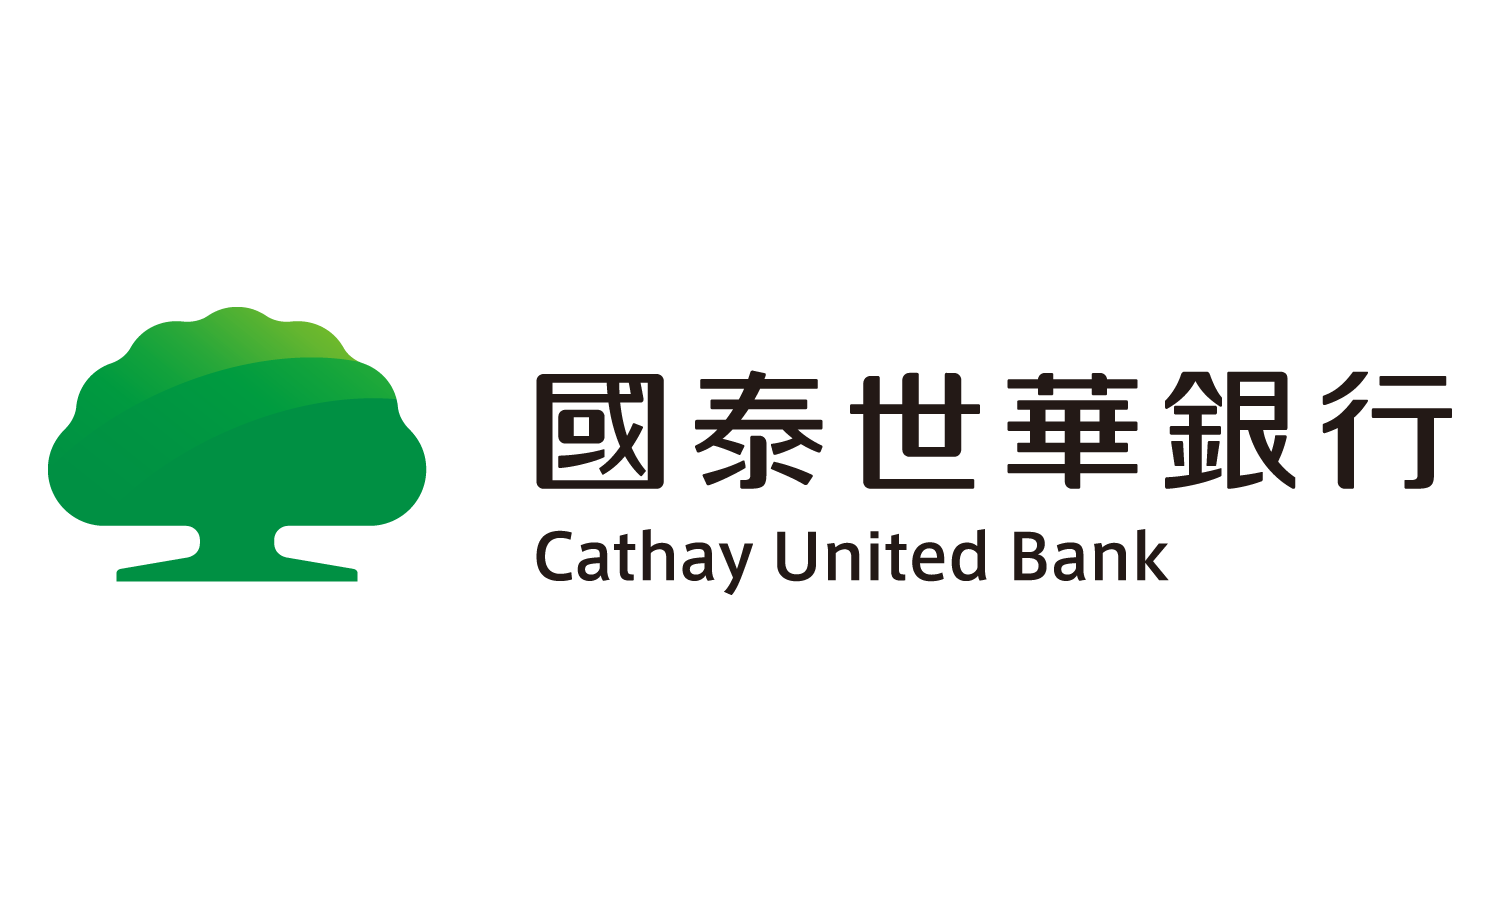 cathay_united_bank-logo_1500x900.png